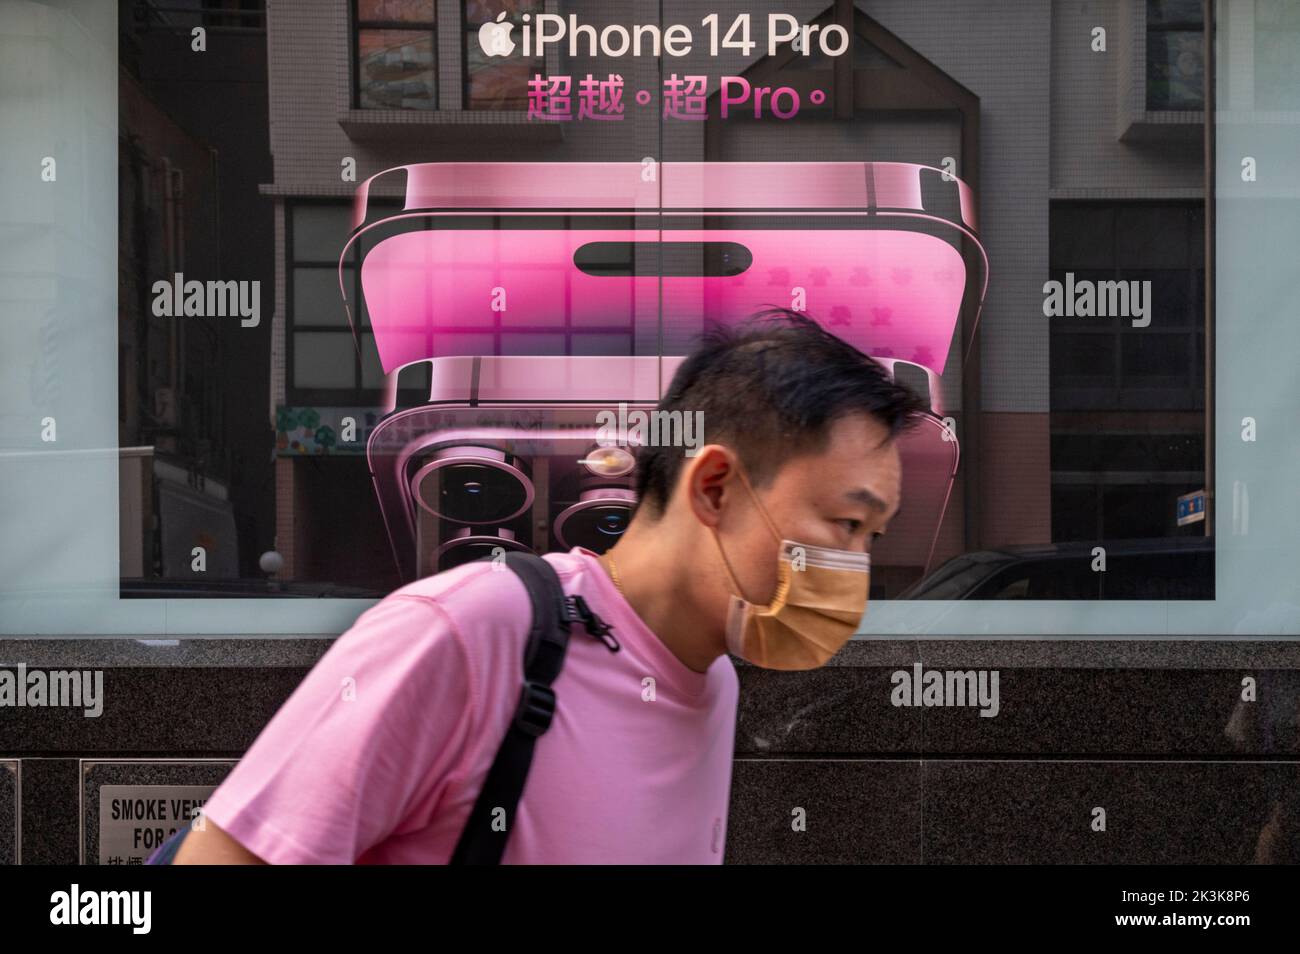 Un piéton passe devant une publicité commerciale Apple iPhone 14 Pro, société multinationale américaine de technologie, à Hong Kong. Banque D'Images